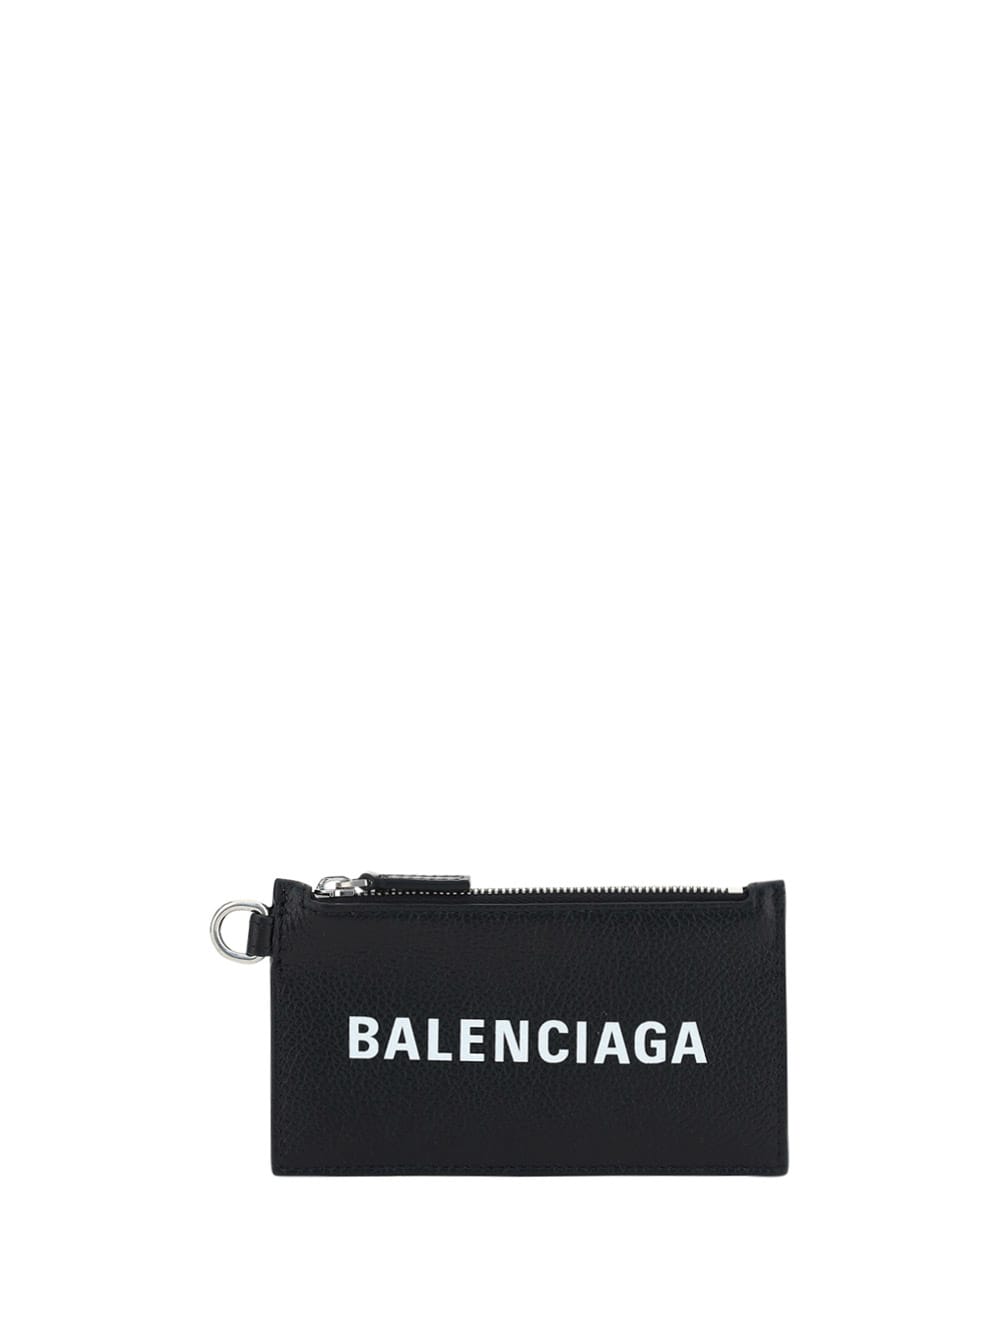 Balenciaga Neckstrap Cash Card Case